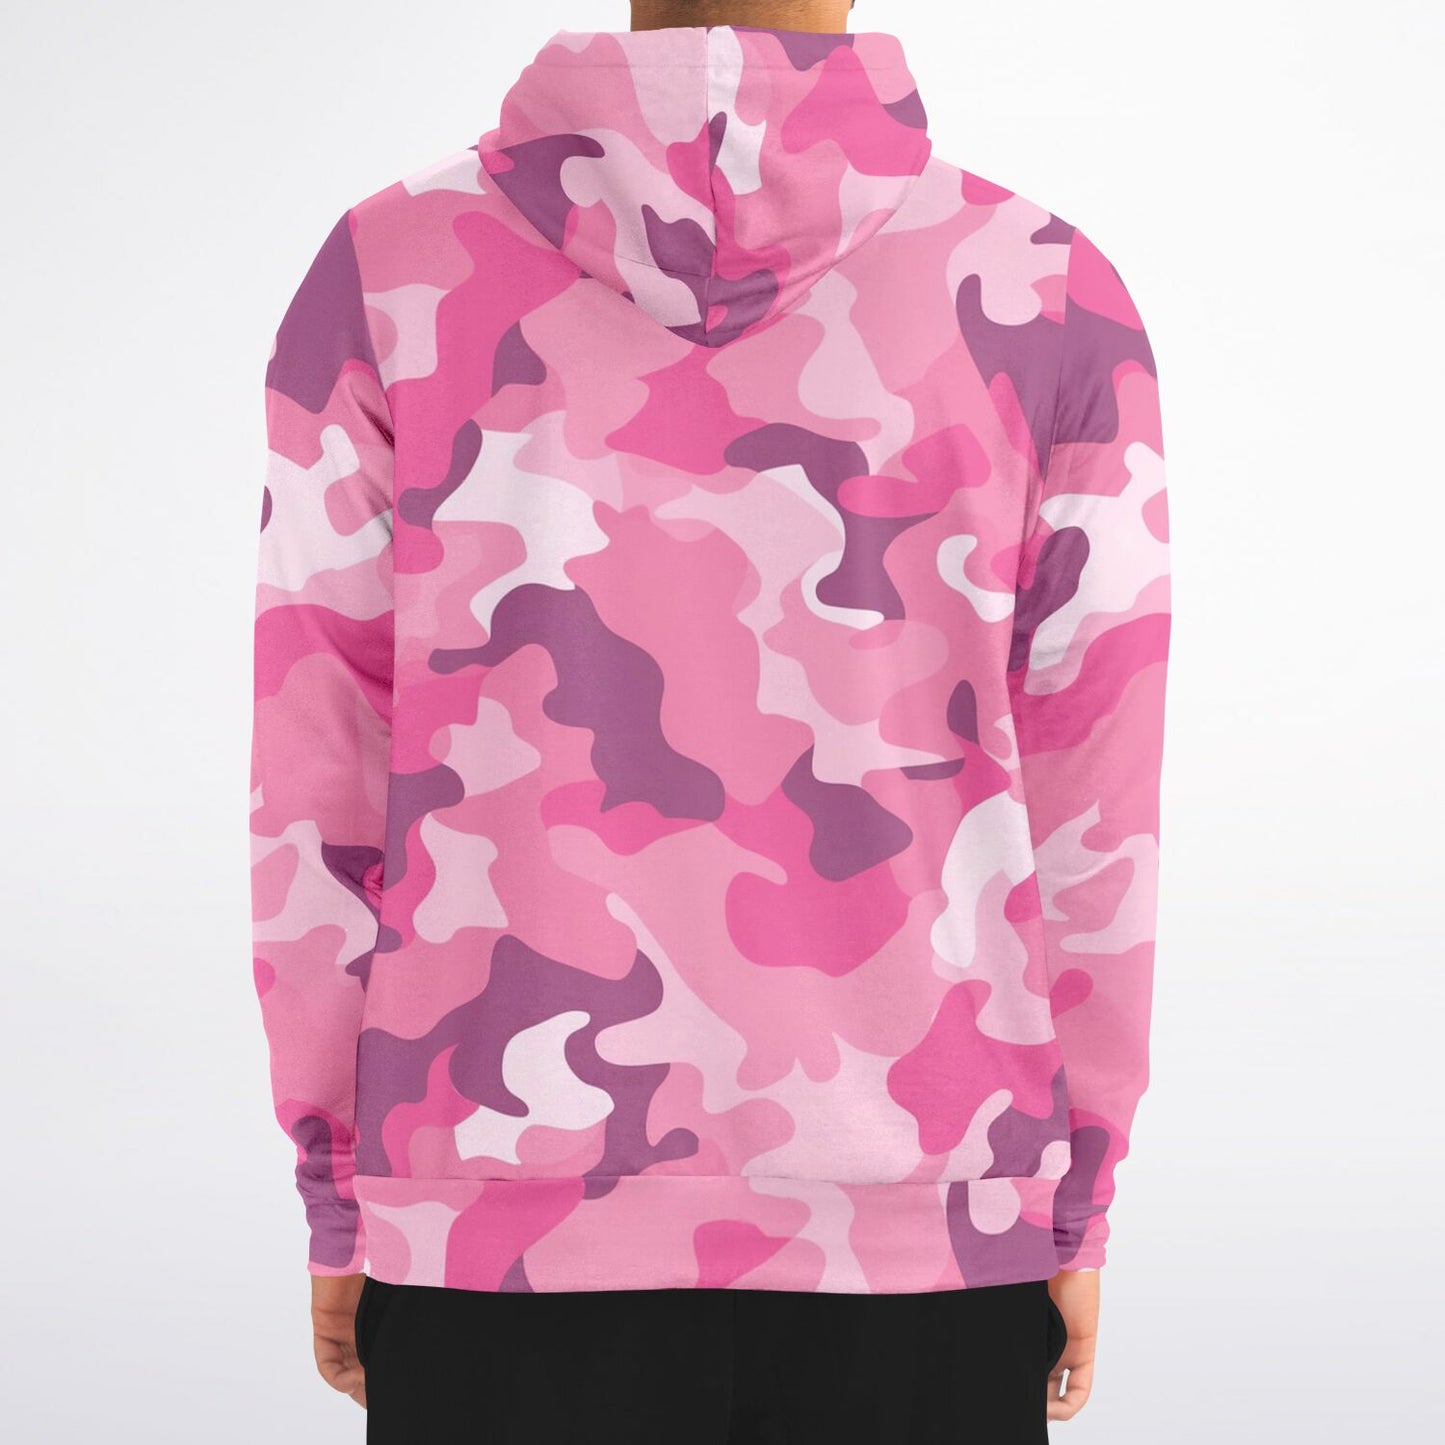 Pink Camo Zip Up Hoodie, Camouflage Full Zipper Pocket Men Women Unisex Adult Aesthetic Graphic Cotton Fleece Hooded Sweatshirt